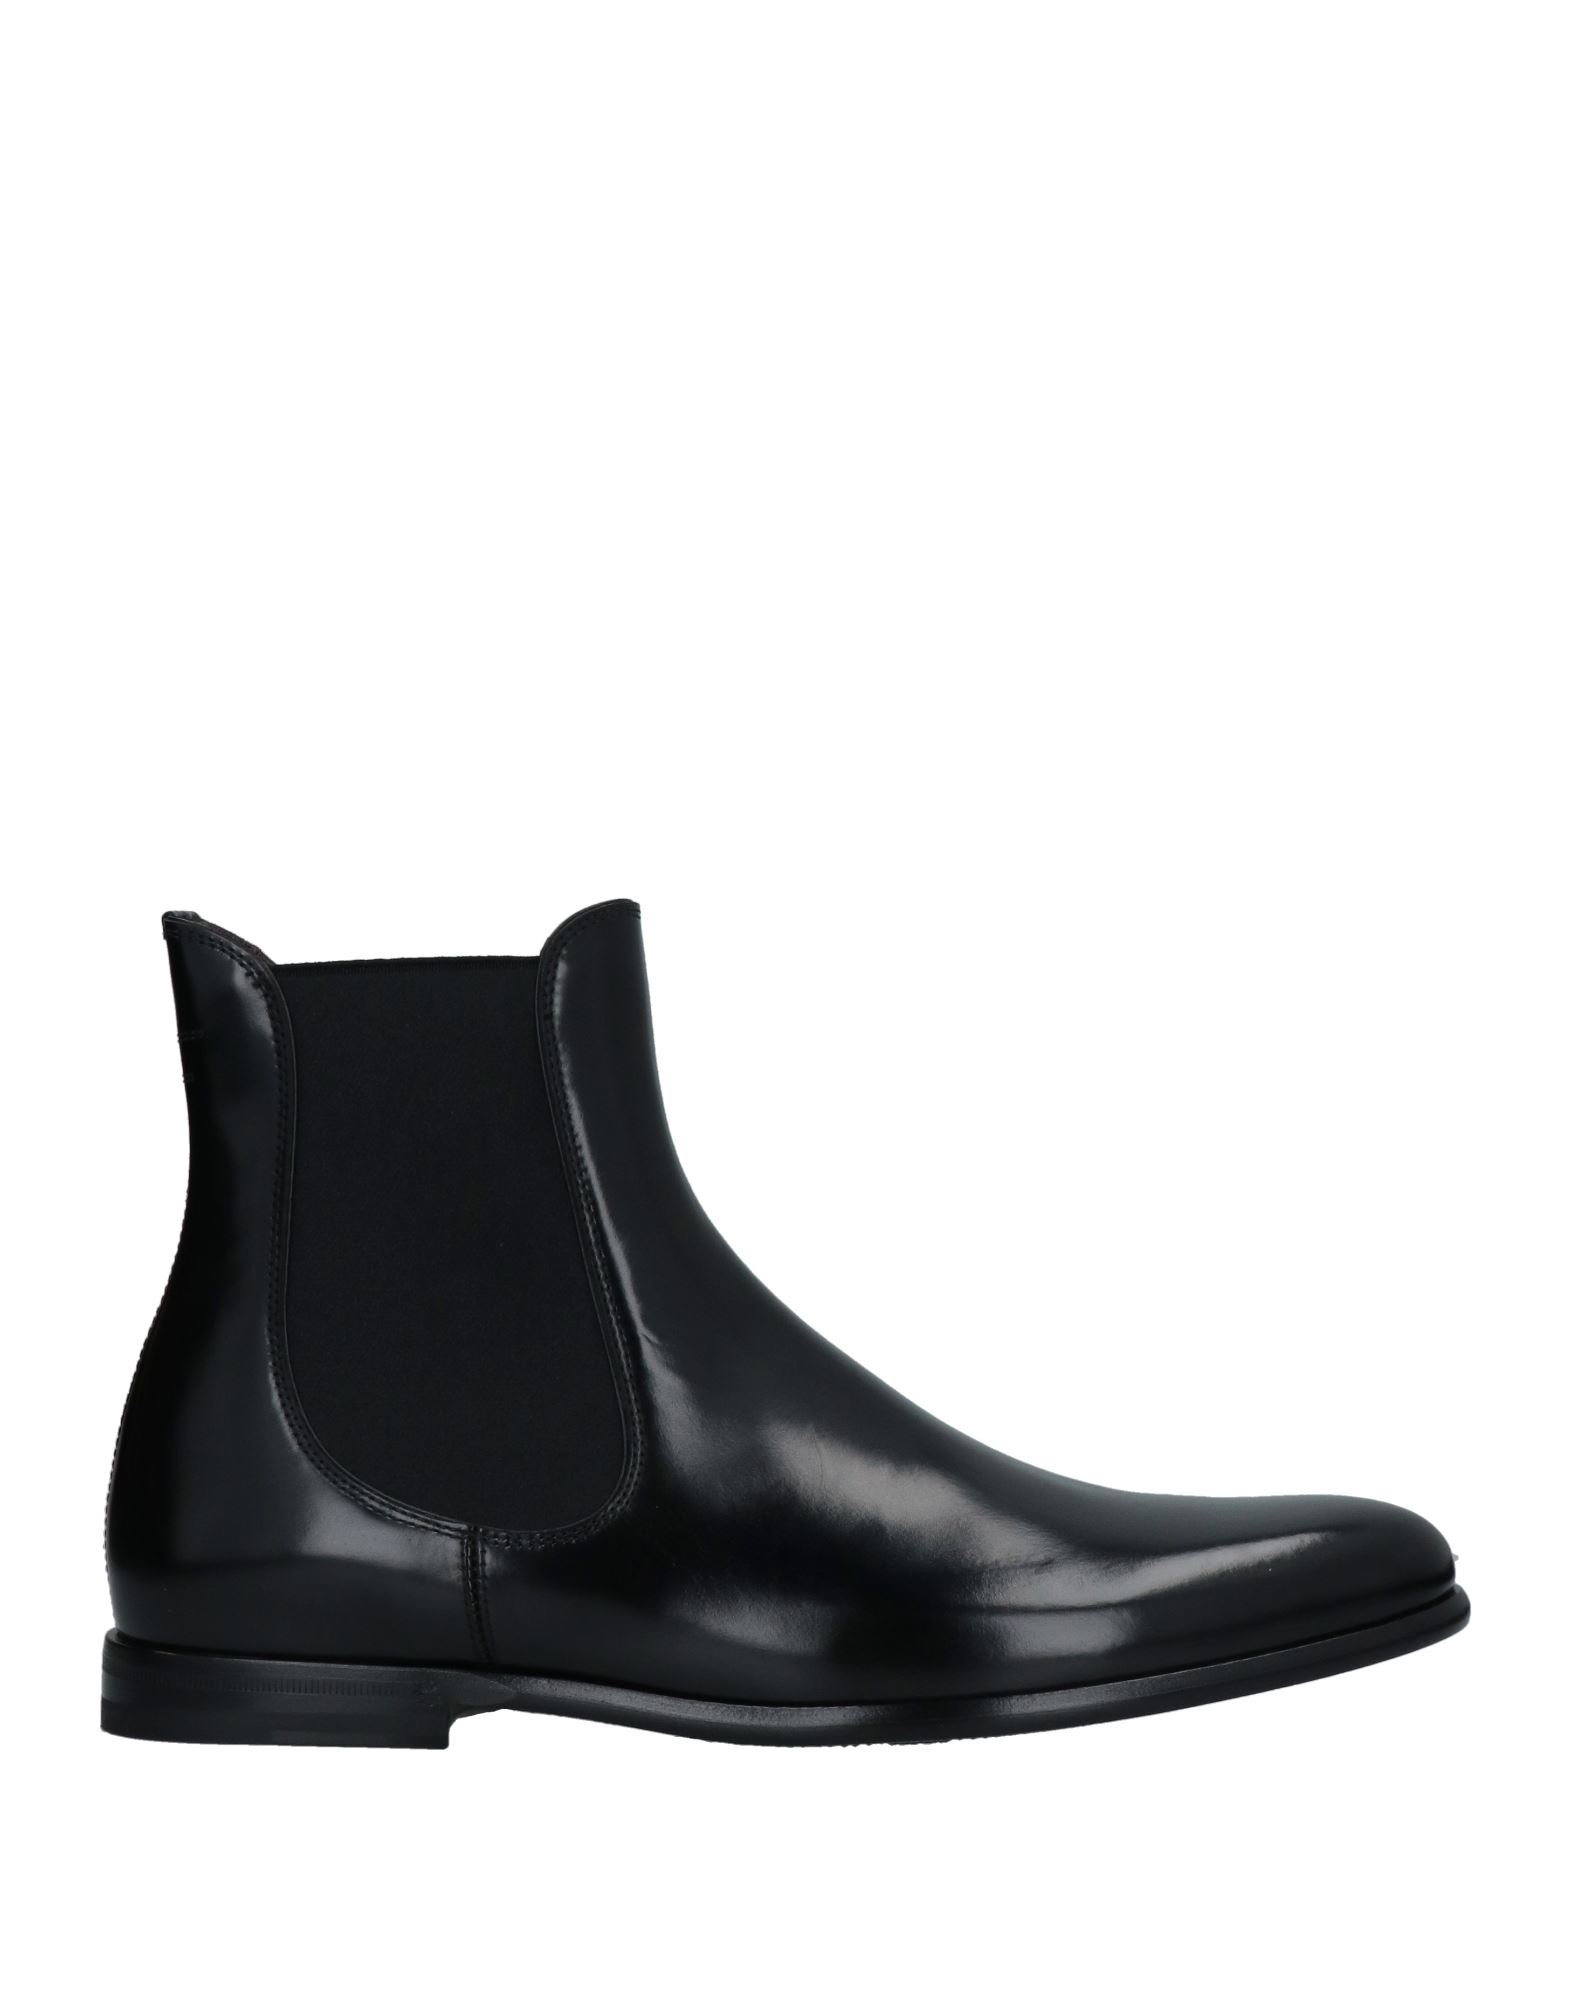 Shop Dolce & Gabbana Man Ankle Boots Black Size 8 Calfskin